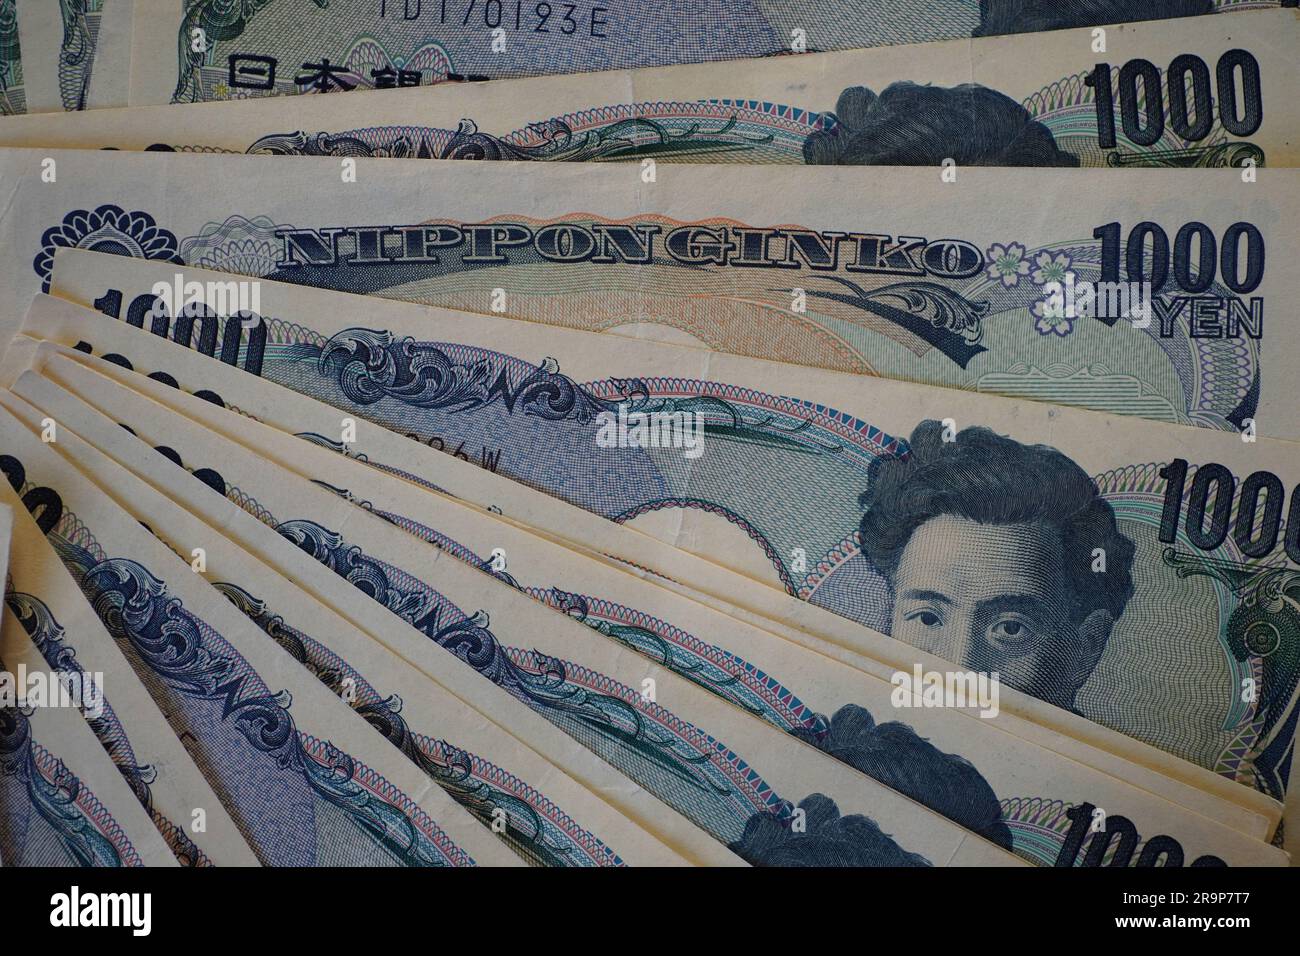 Un tas de billets japonais de 1 000 yens disposés sur une table Banque D'Images